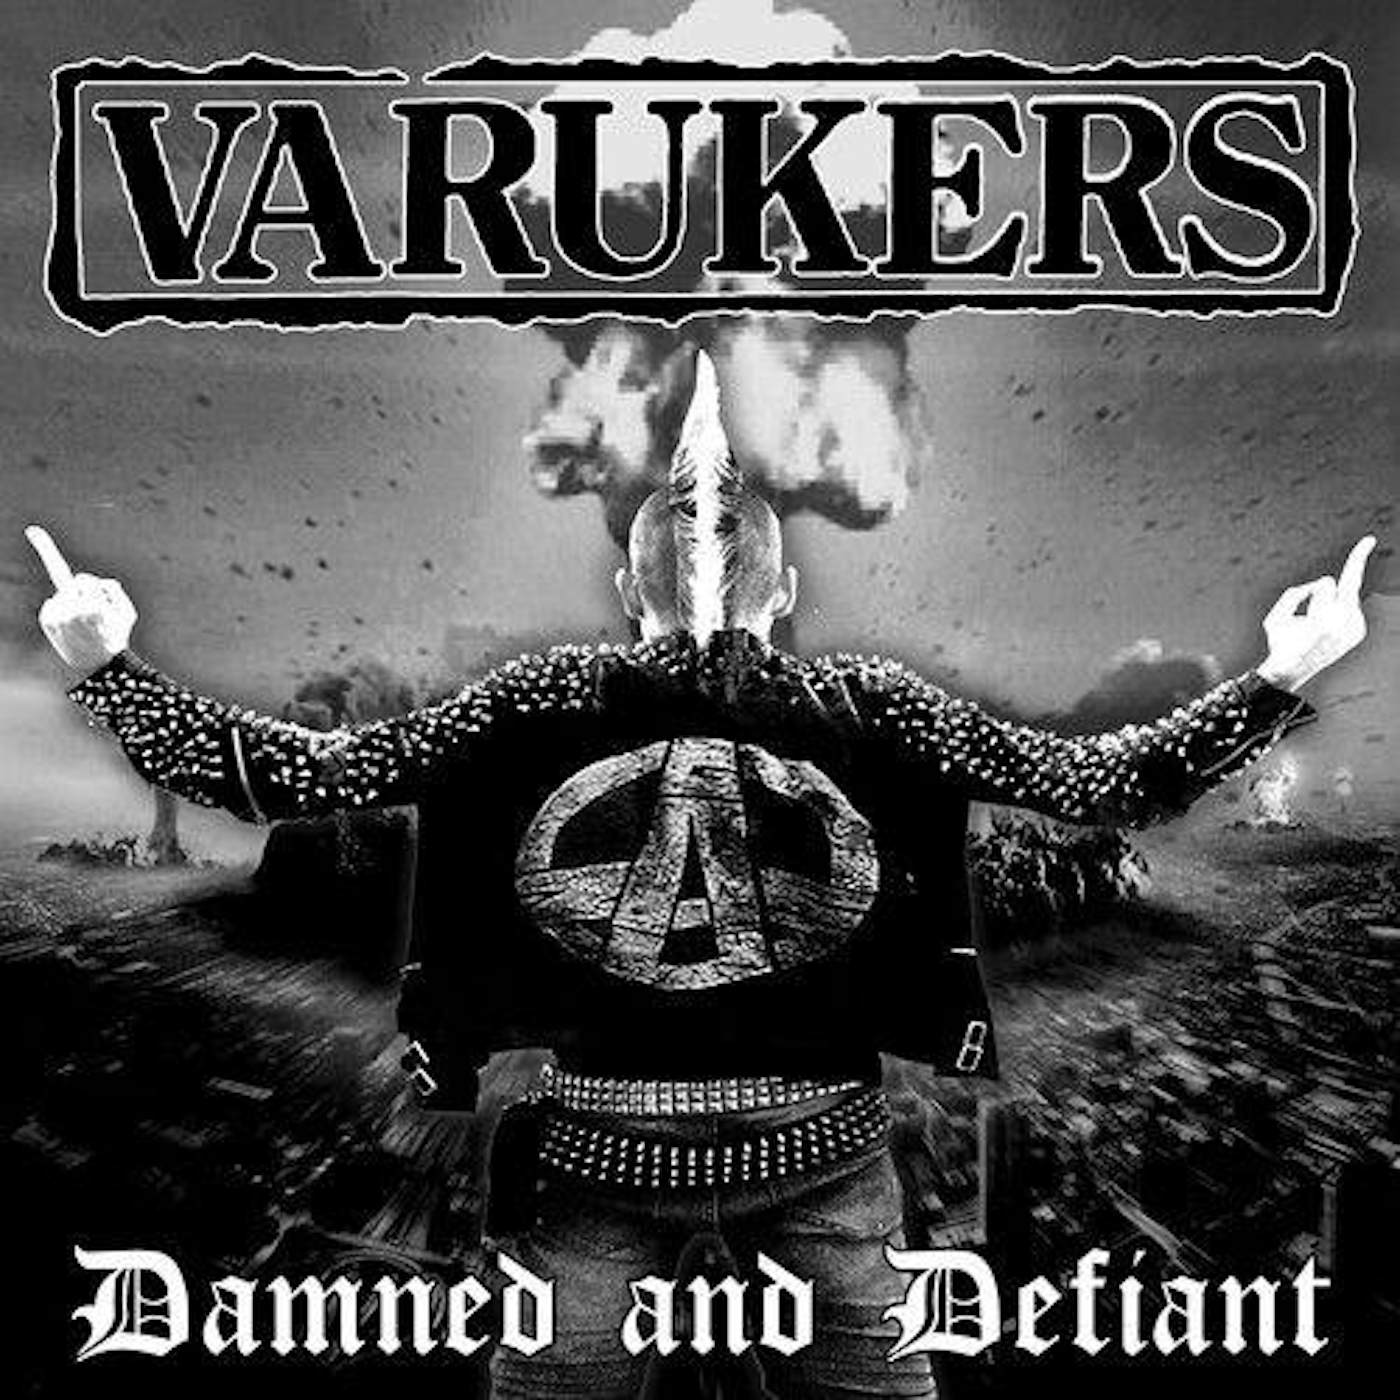 The Varukers Damned & Defiant (Red vinyl) vinyl record